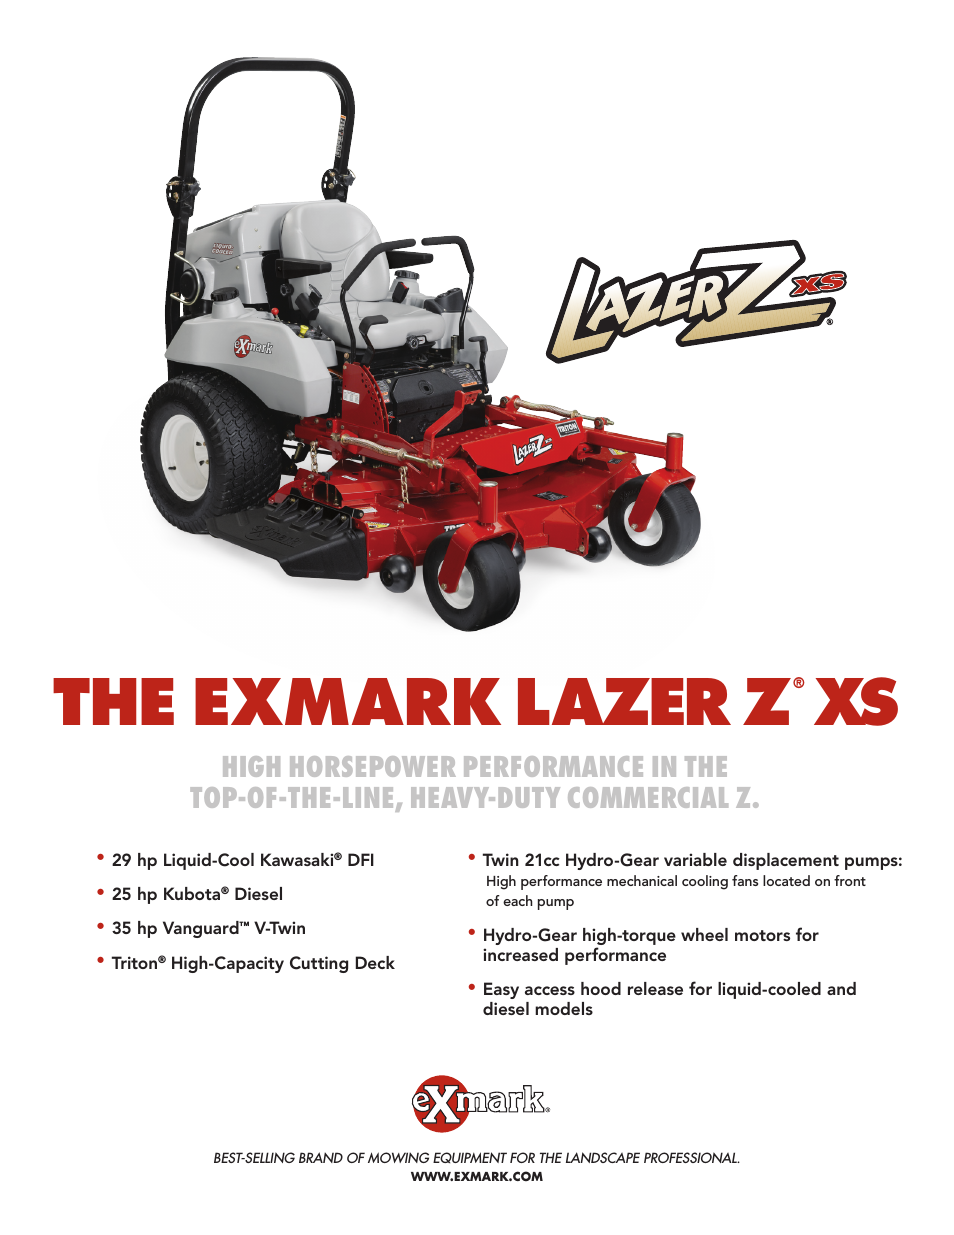 Lazer Z XS lXs35bv605